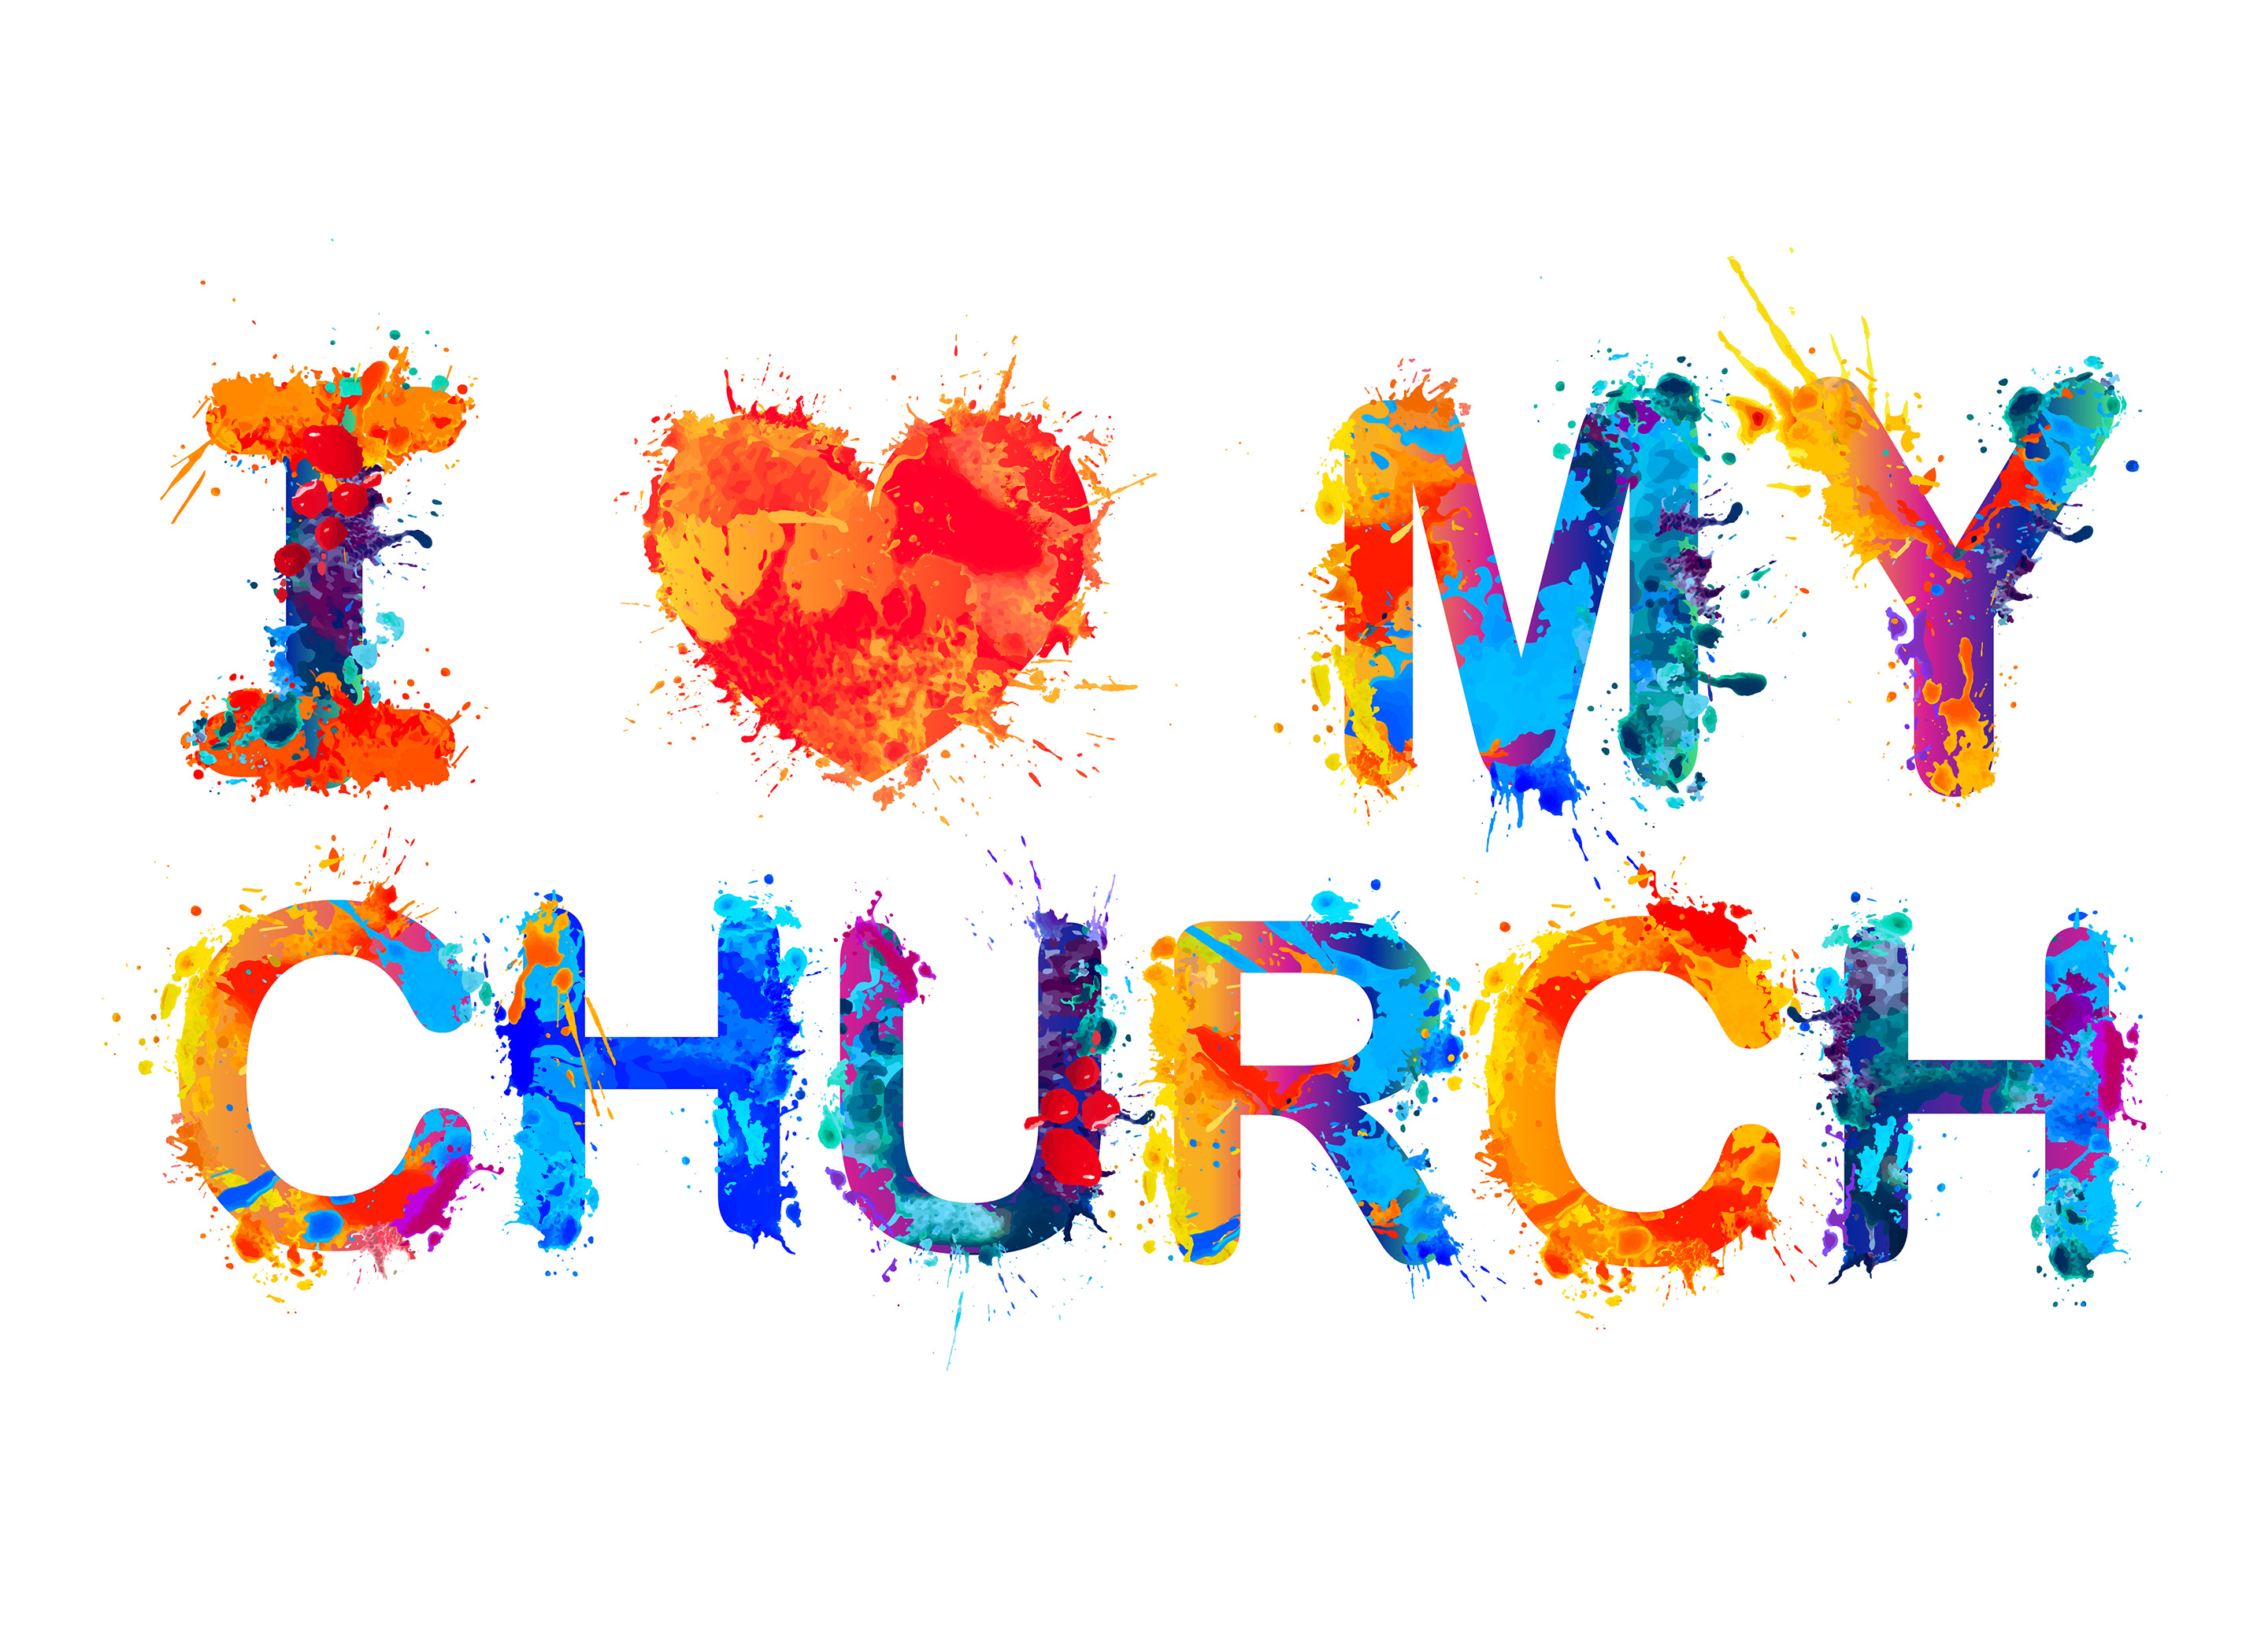 Grafik aus bunten Farbflecken mit Text "I love my church": Gemeinschaft, Lebensbegleitung, Spiritualität, Kultur ... es gibt viele Gründe, gerne Mitglied in der Evangelischen Kirche zu sein.